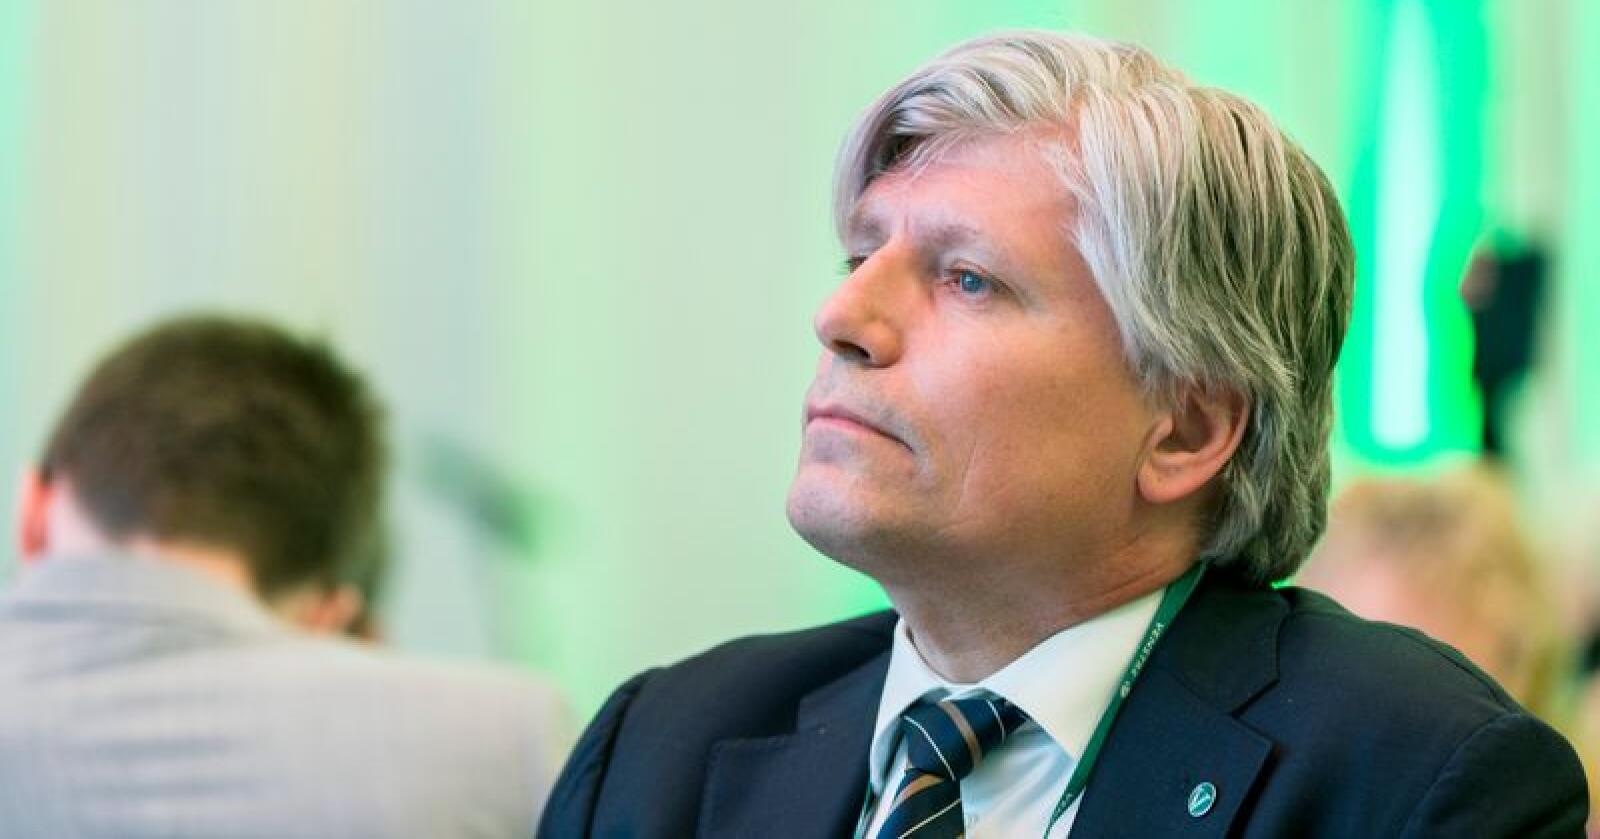 Klima- og miljøminister Ola Elvestuen har besluttet å utsette rivingen av seterbygningene i Vesllie på Hjerkinn etter massive protester. Foto: Ned Alley / NTB scanpix